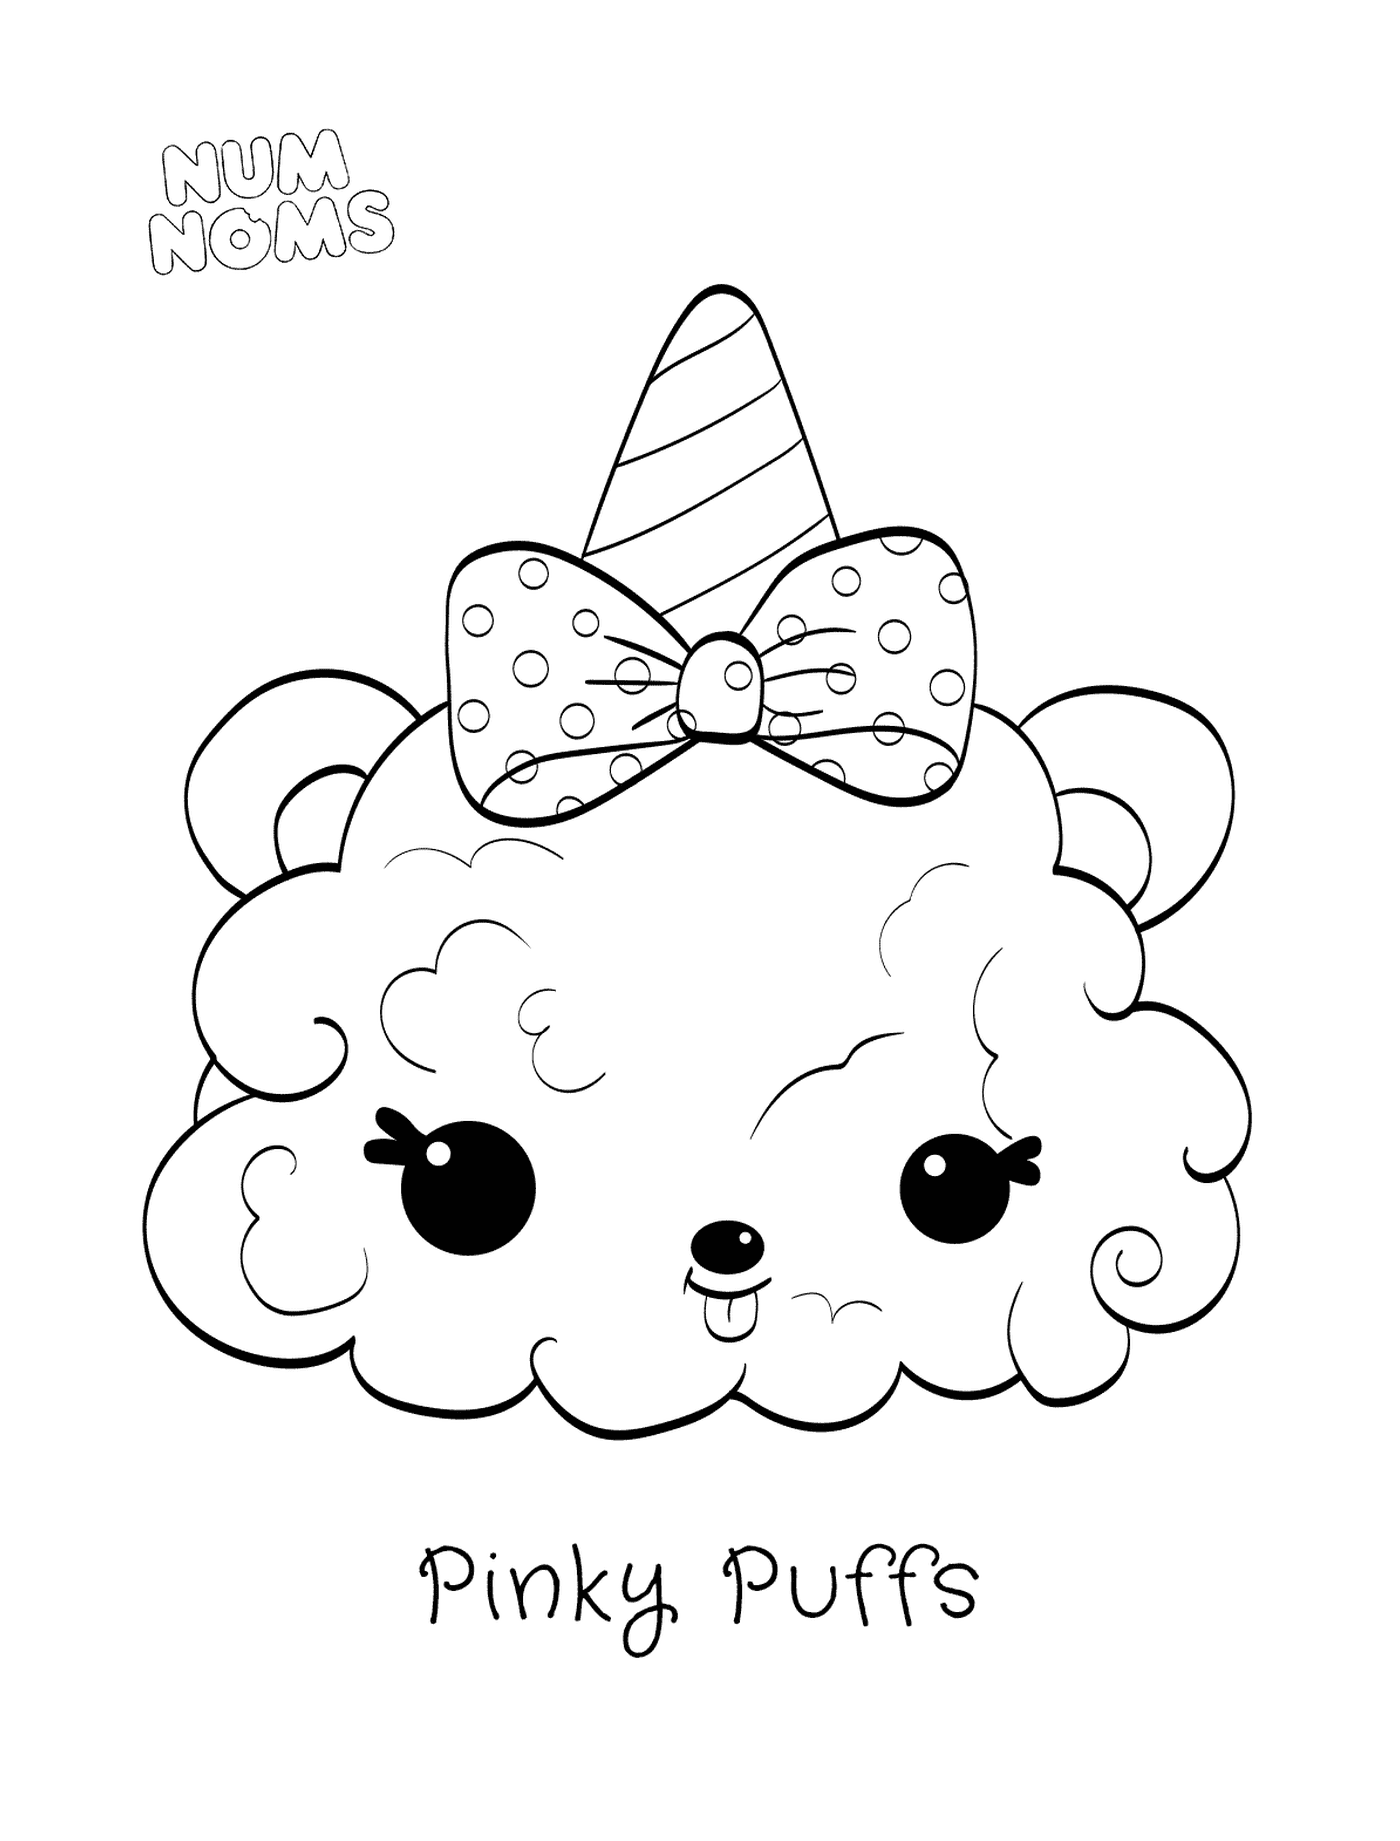  以 Num 名称系列 2 提供的 Pinky Puffs 